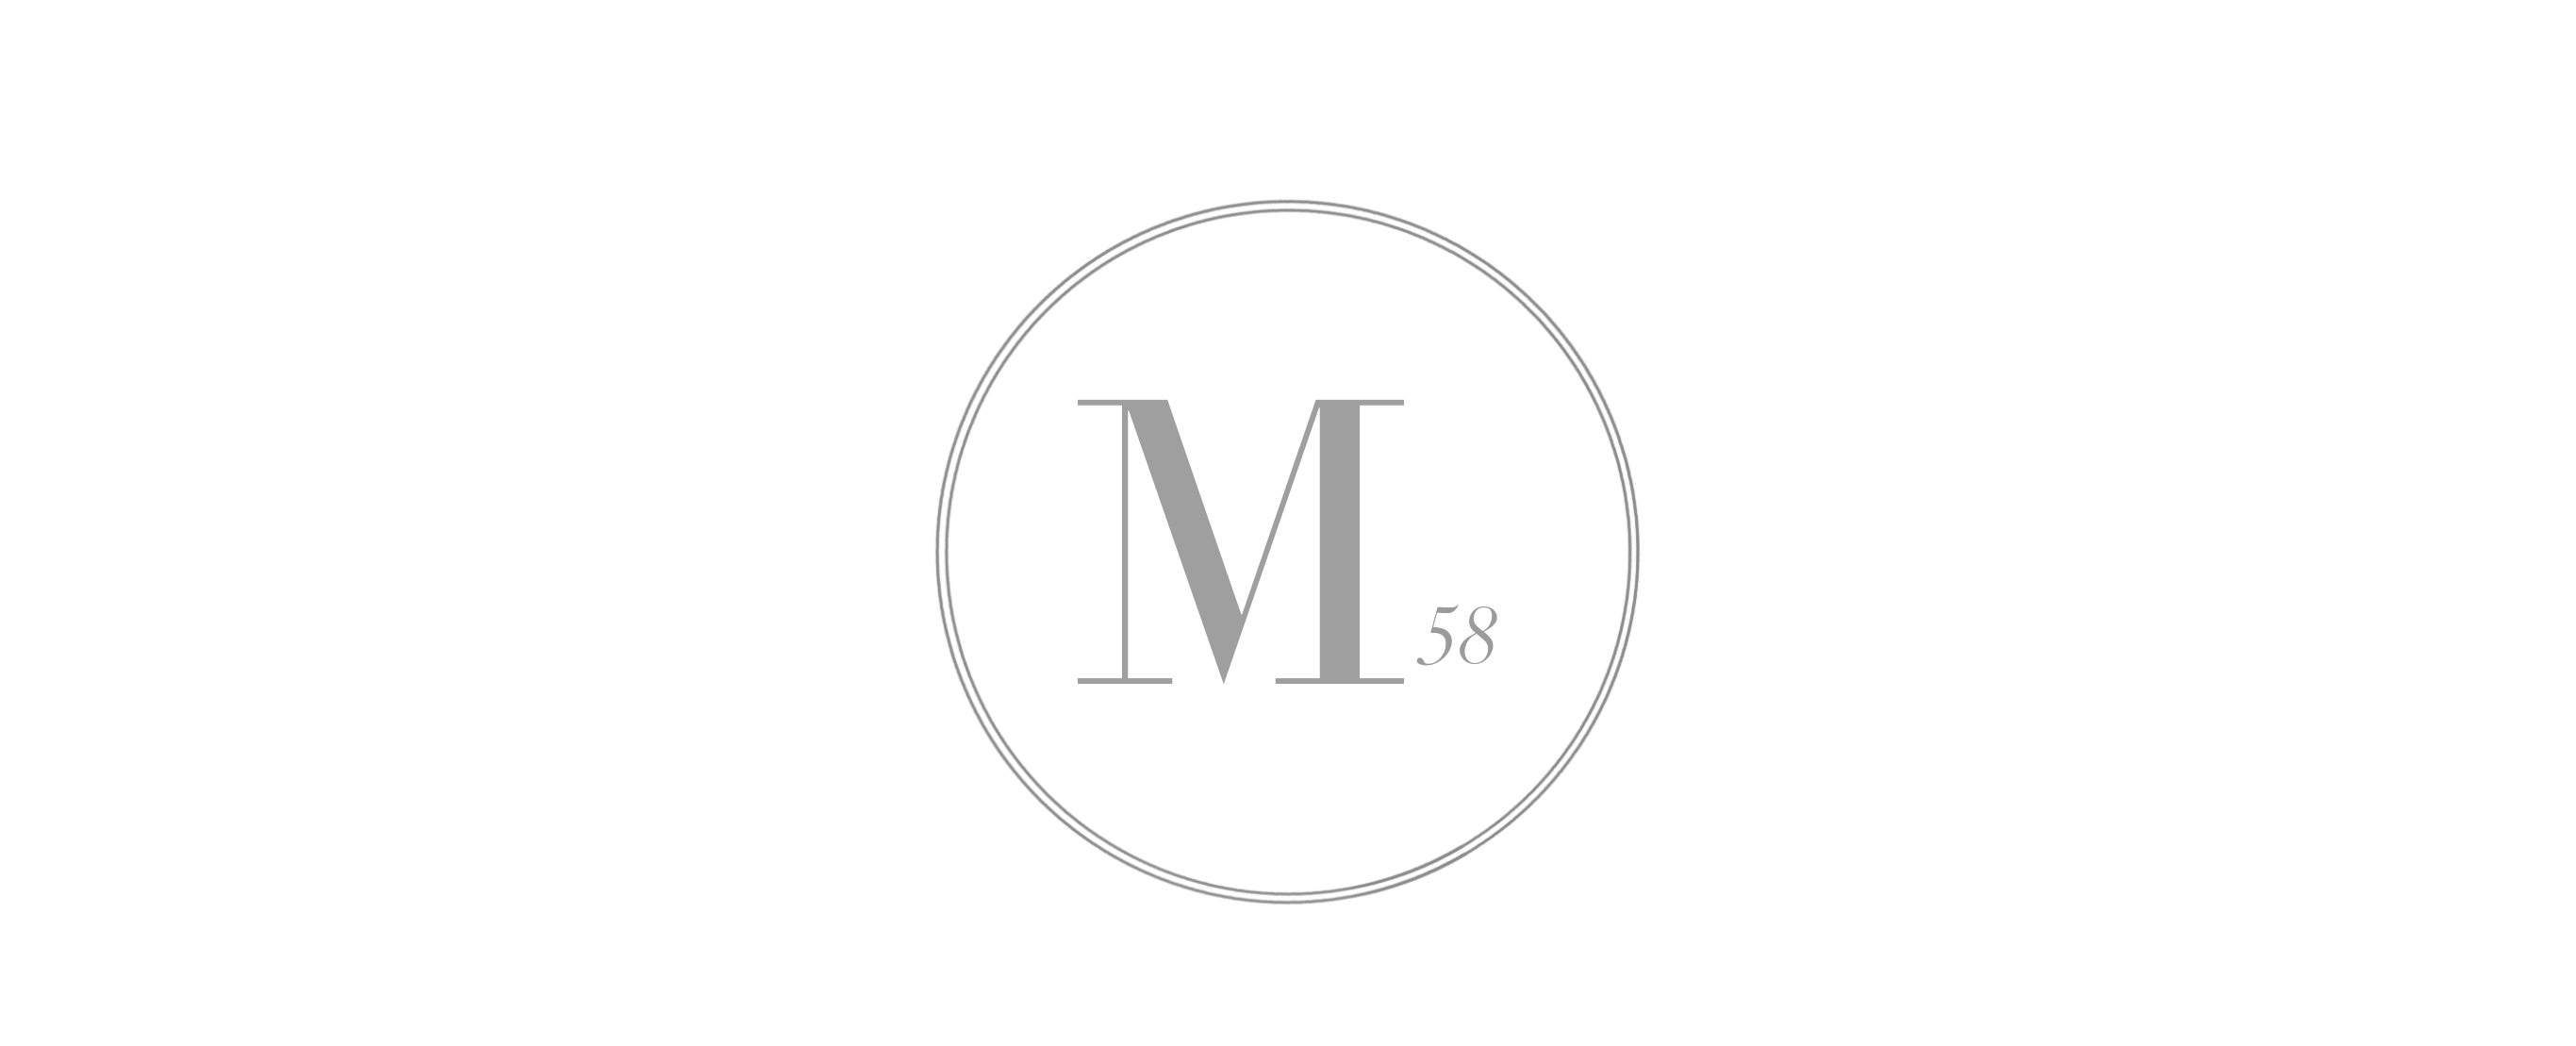 Moose 58 logo image